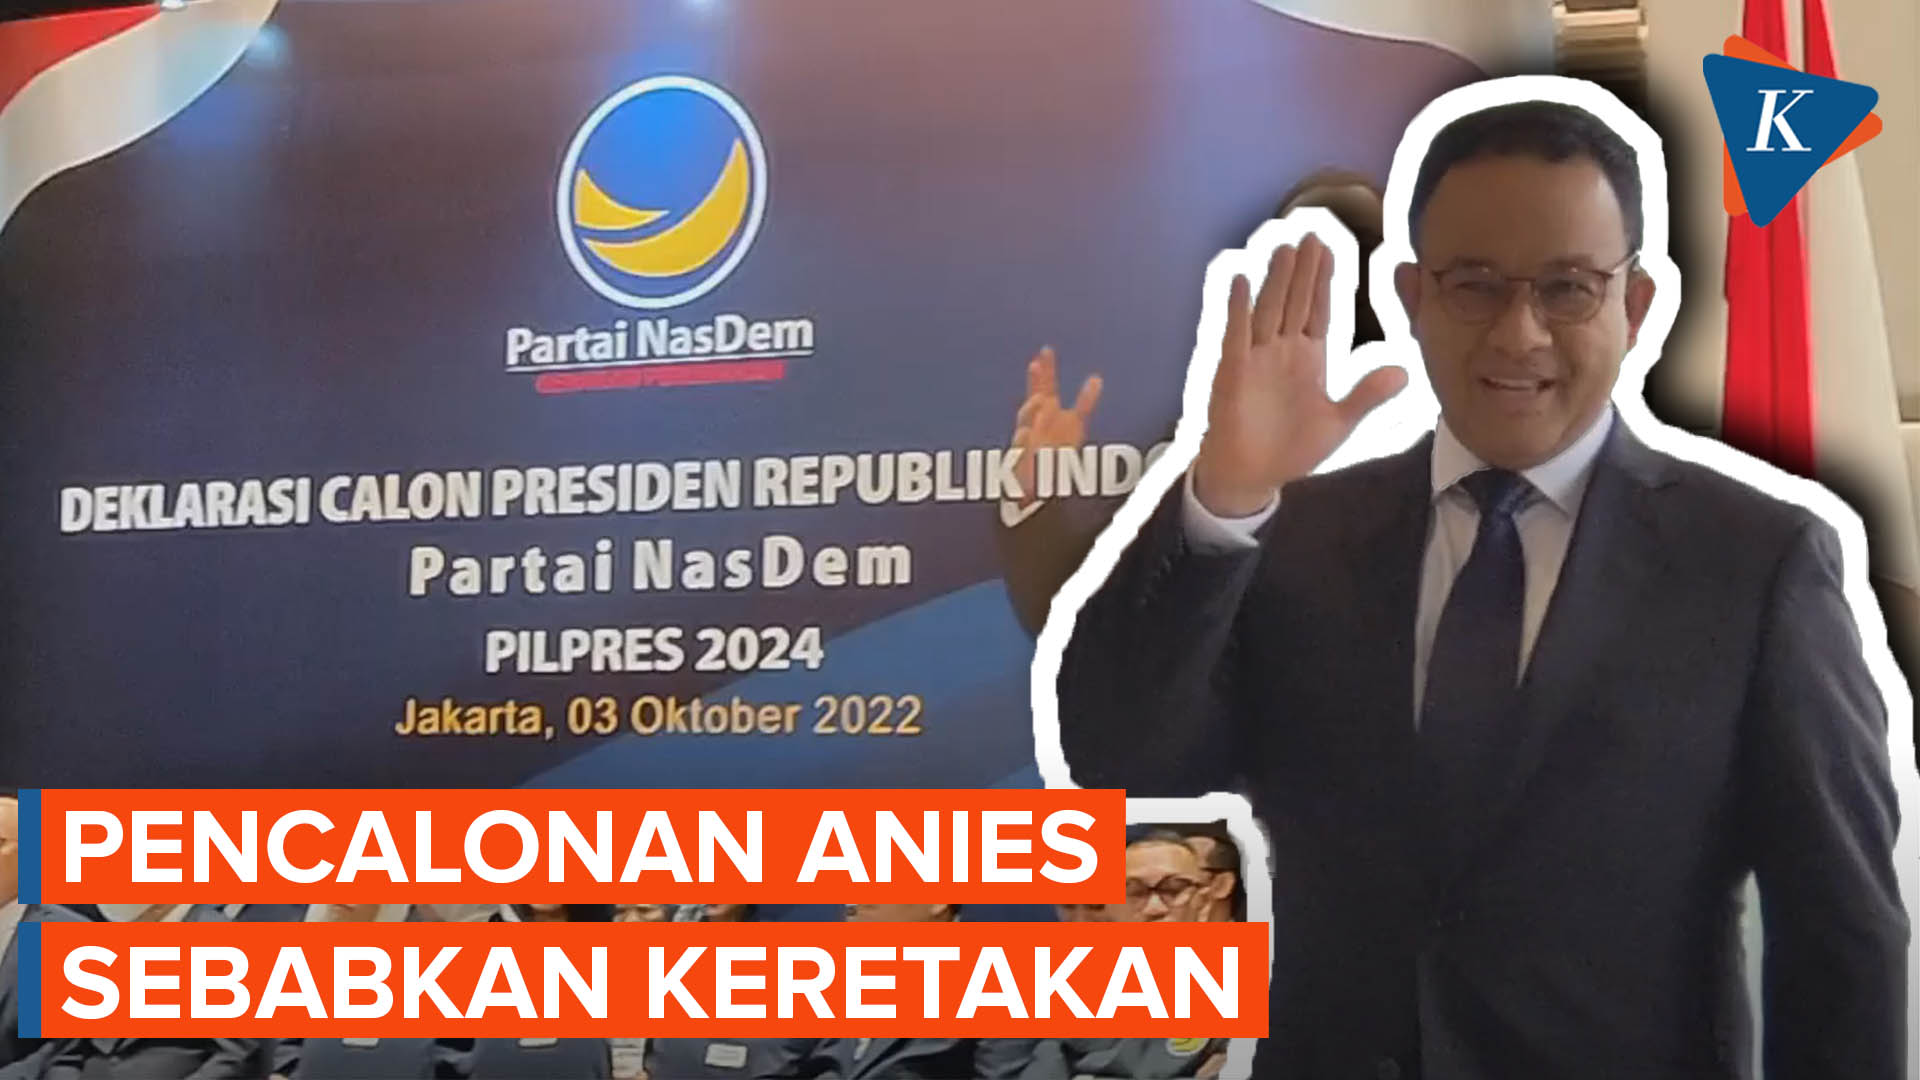 Pencalonan Anies sebagai Bacapres Disebut Timbulkan Keretakan di Internal Partai Nasdem